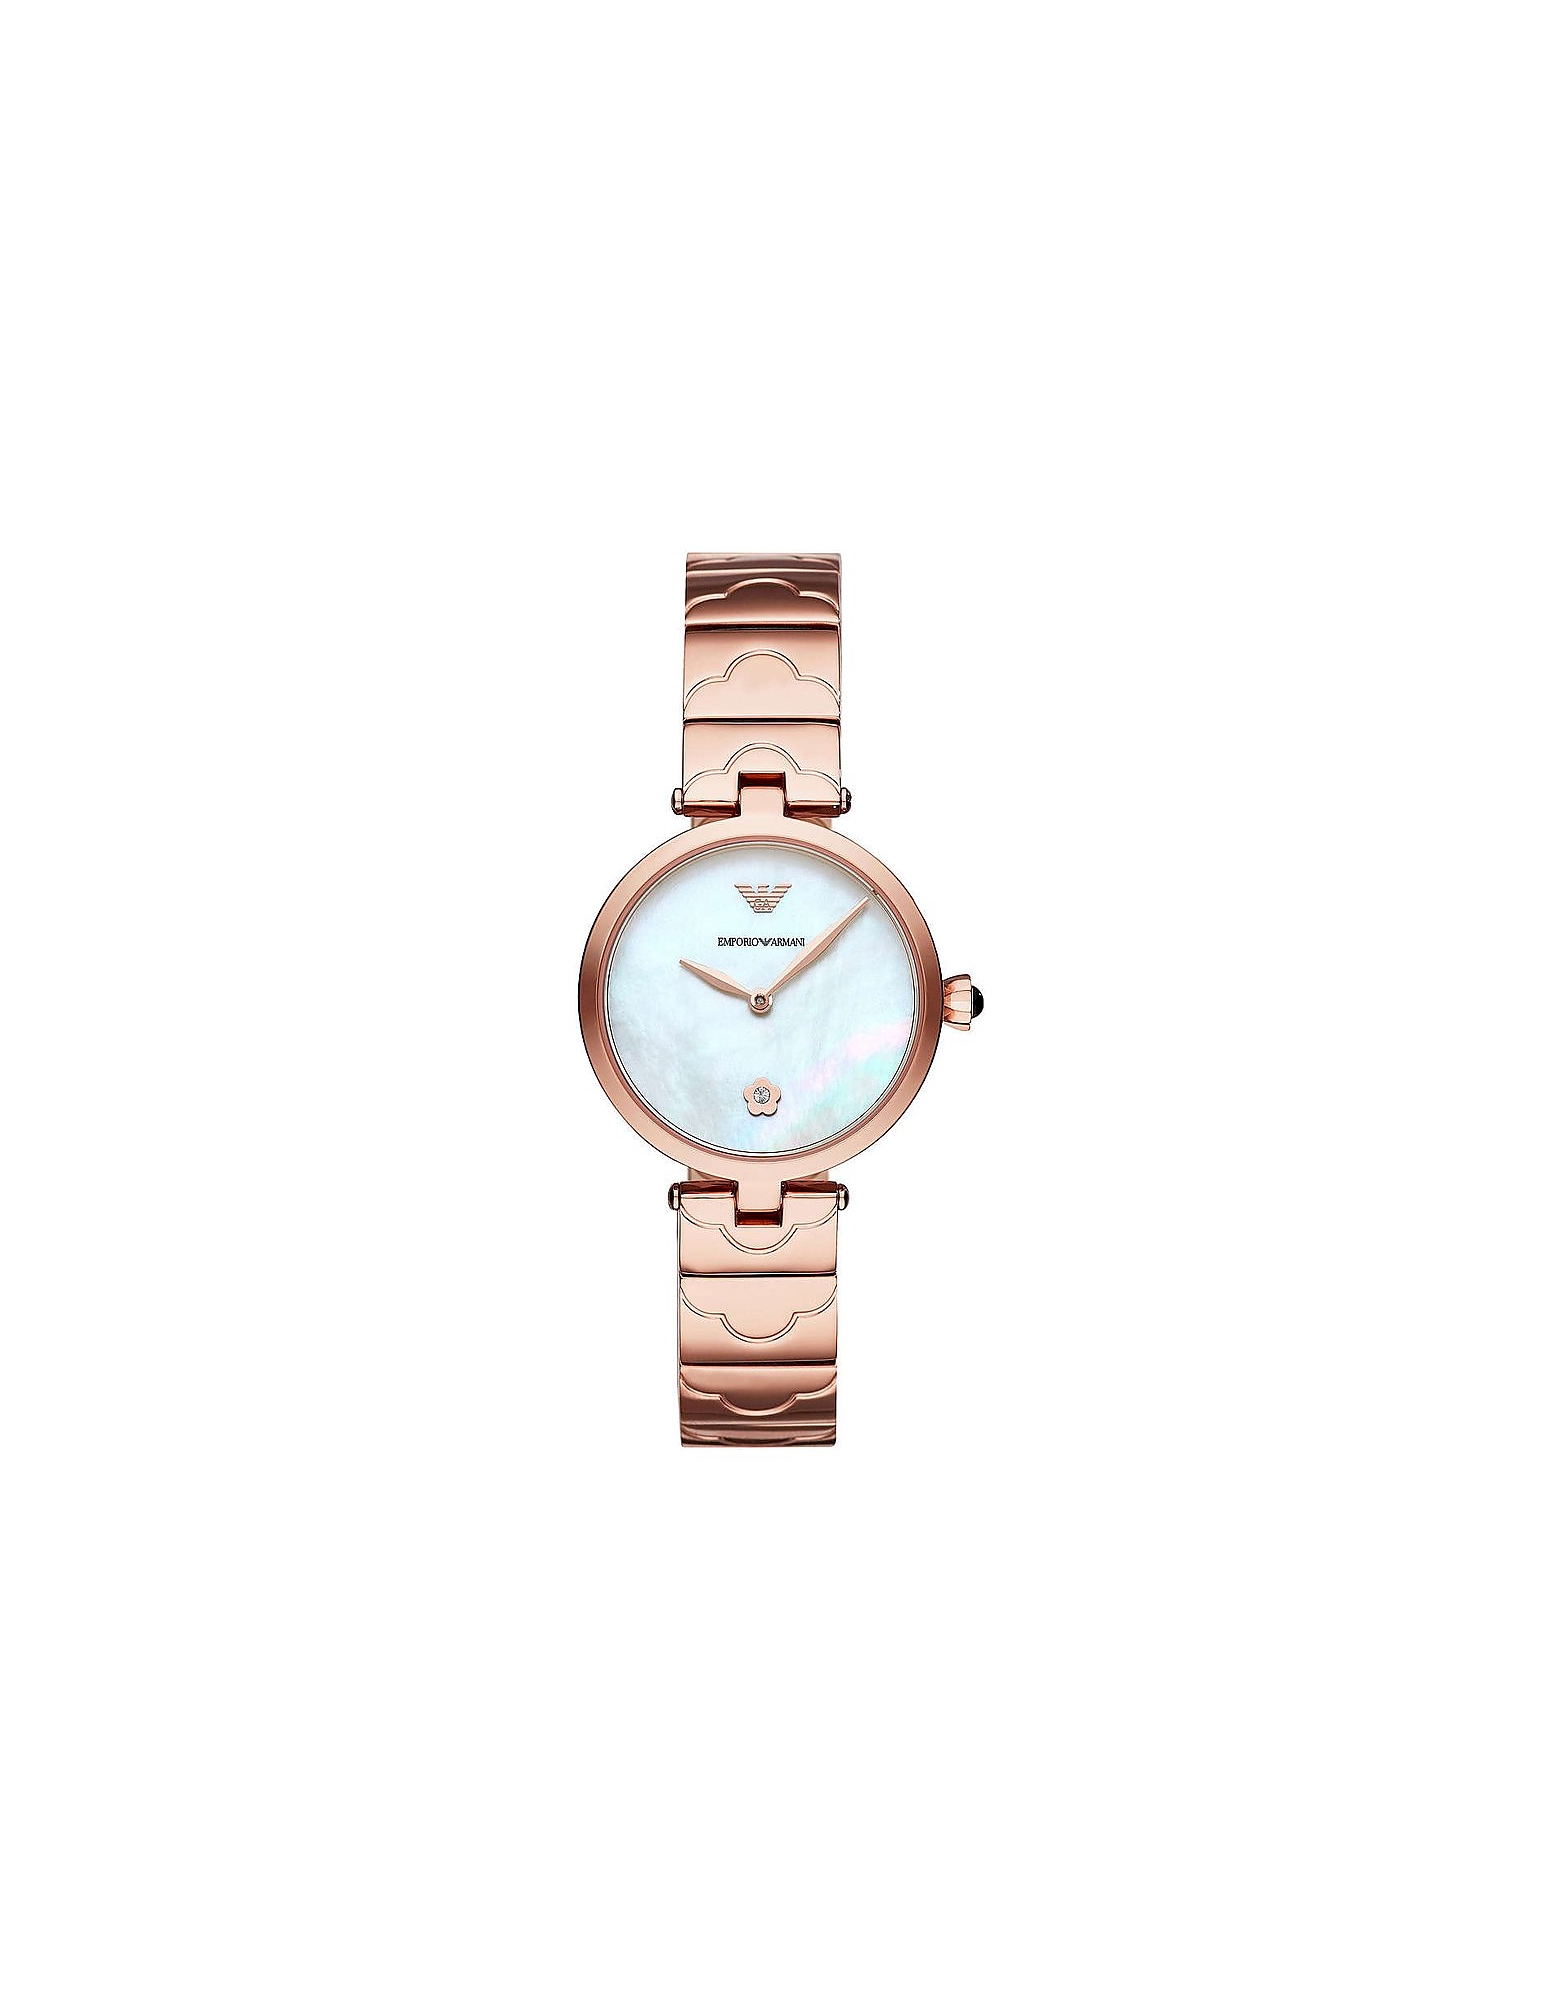 Emporio Armani Designer Women's Watches Women's Quartz Analogue Watch In Rose